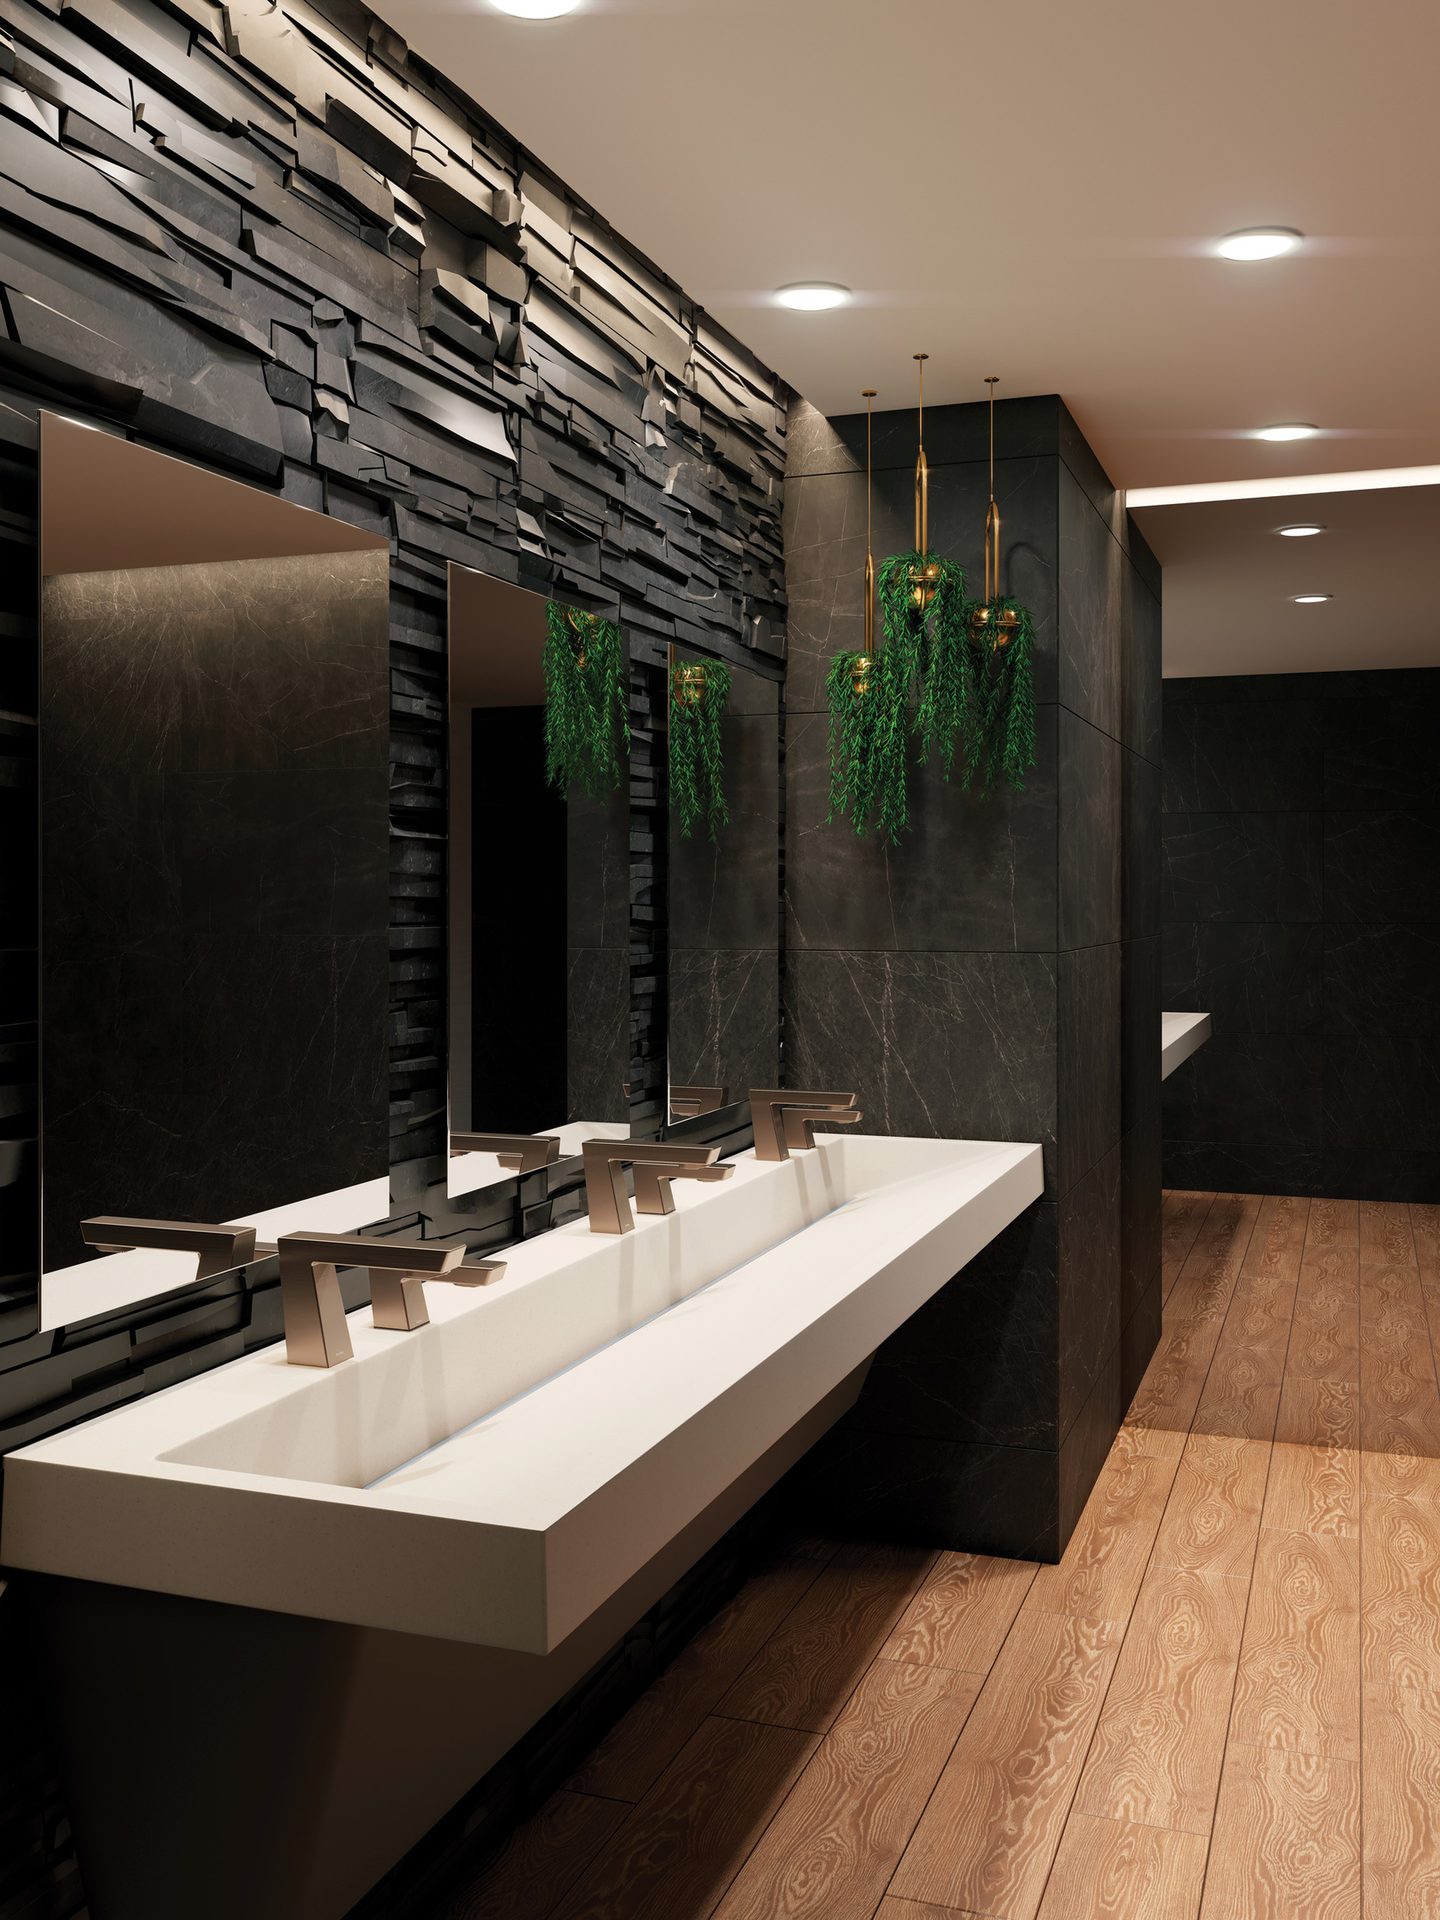 Plumbing fixture, Vision care, Interior design, Mirror, Tap, Sink, Architecture, Bathroom, Flooring